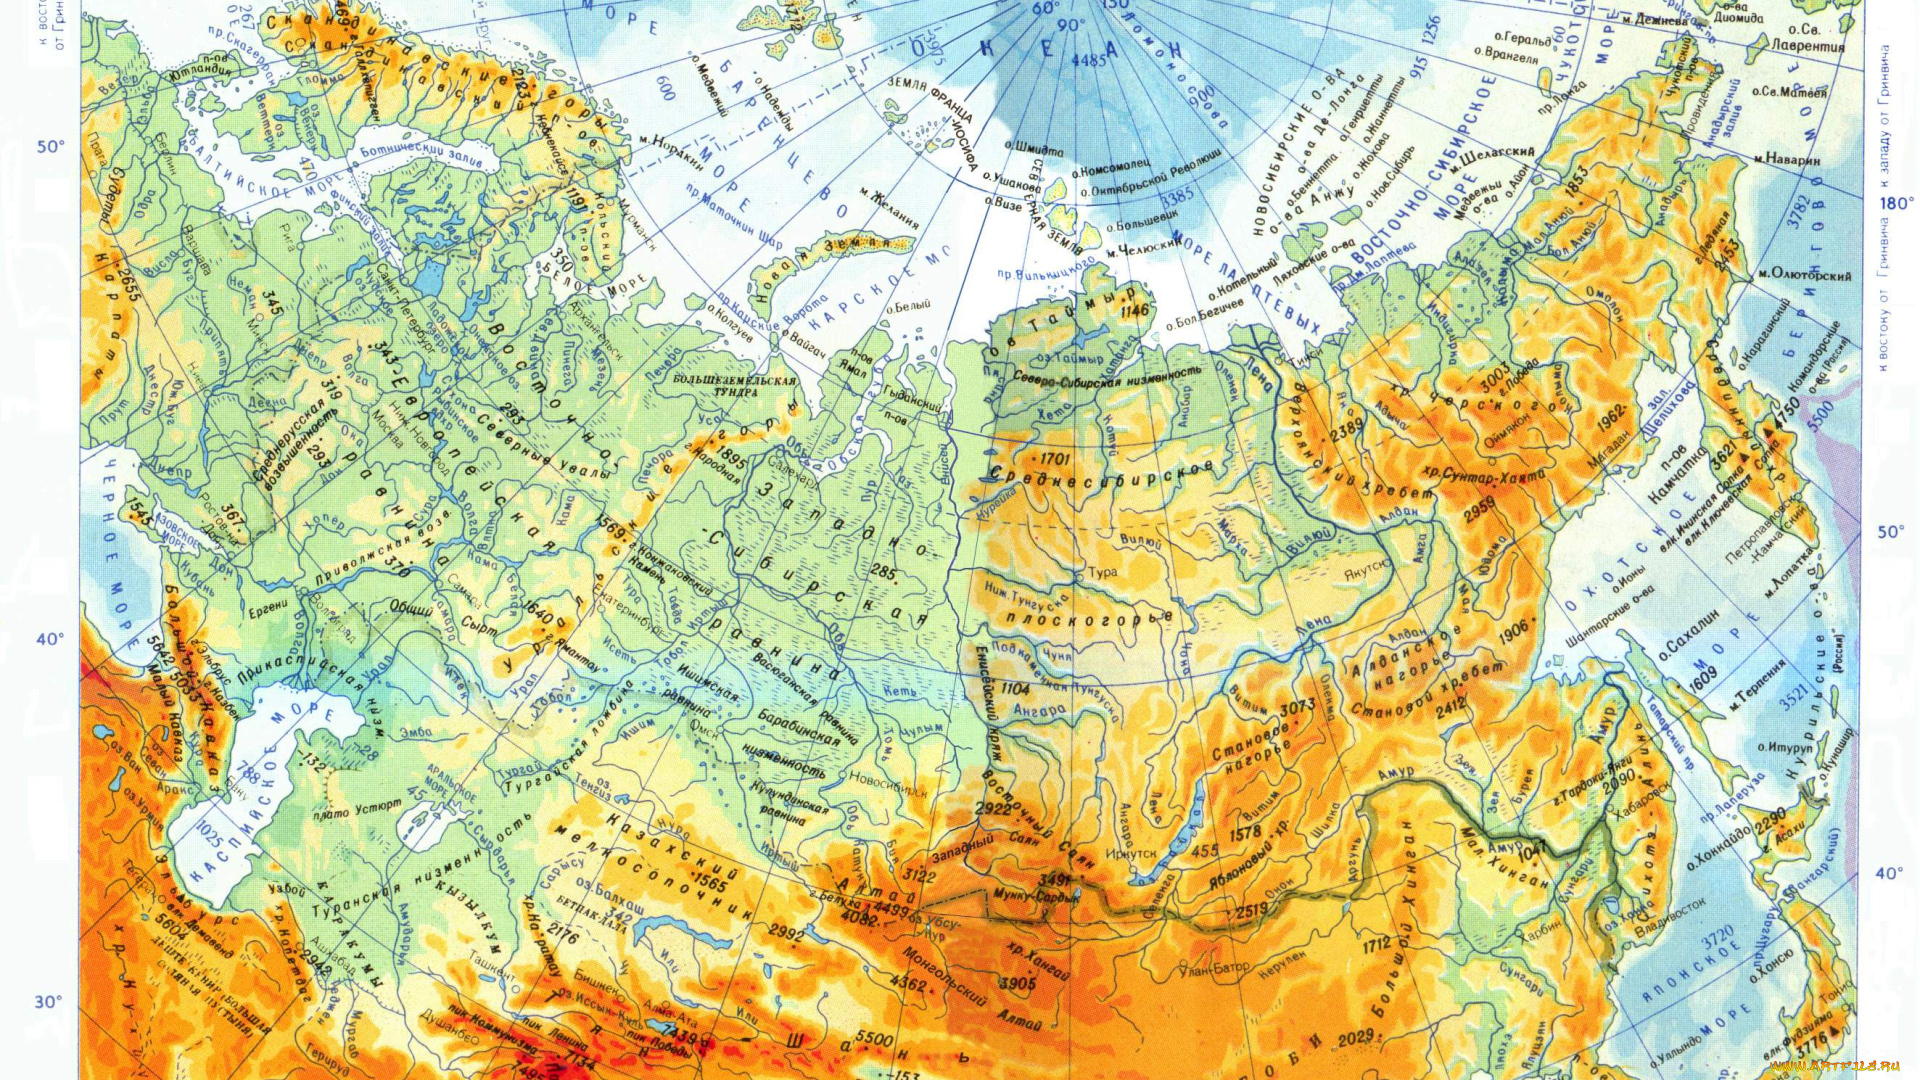 реки россии на карте с названиями